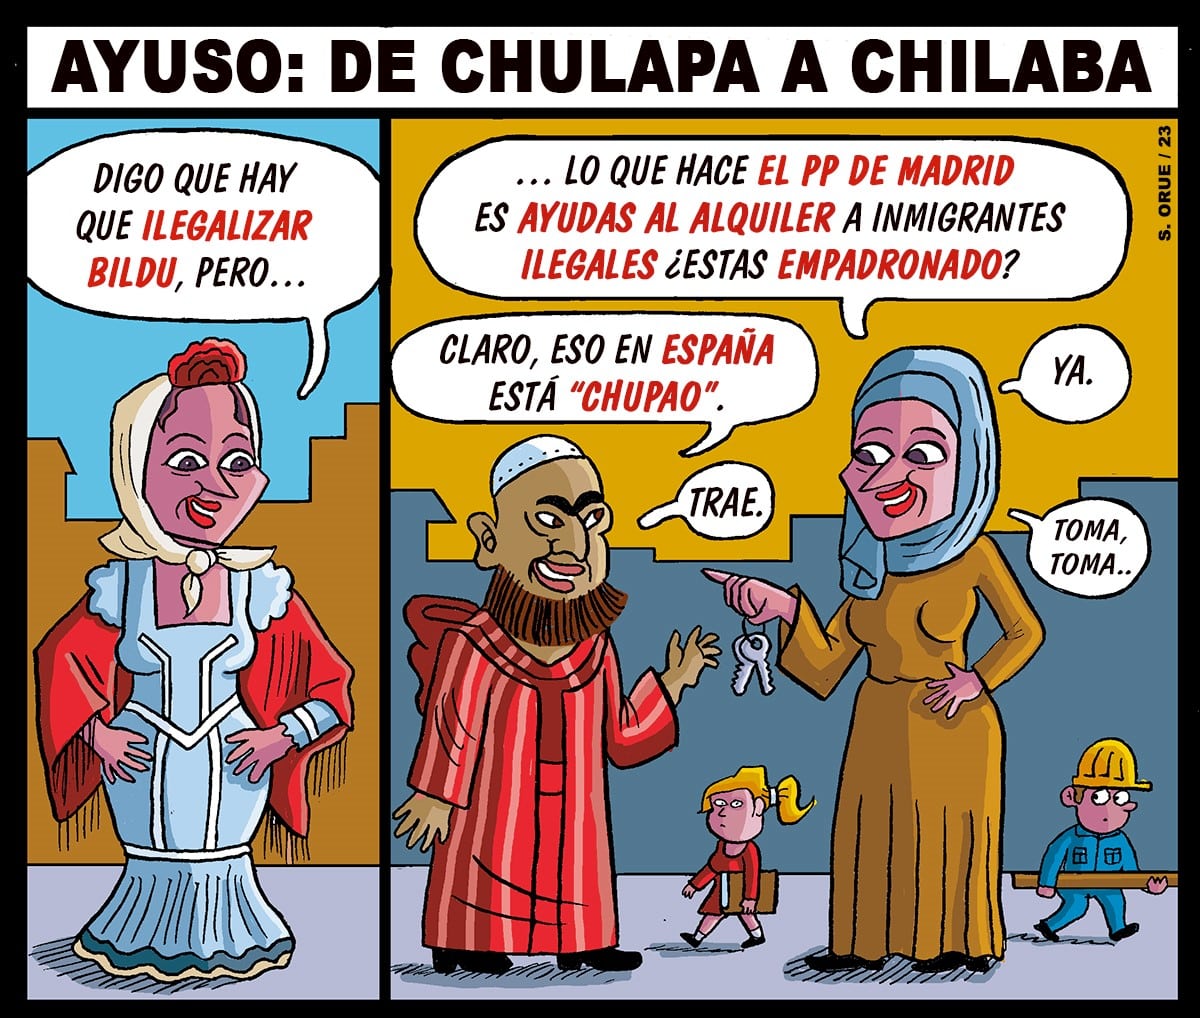 De chulapa a chilaba: más Mohameds que Josés y Antonios sumados en las ayudas a la vivienda en Madrid